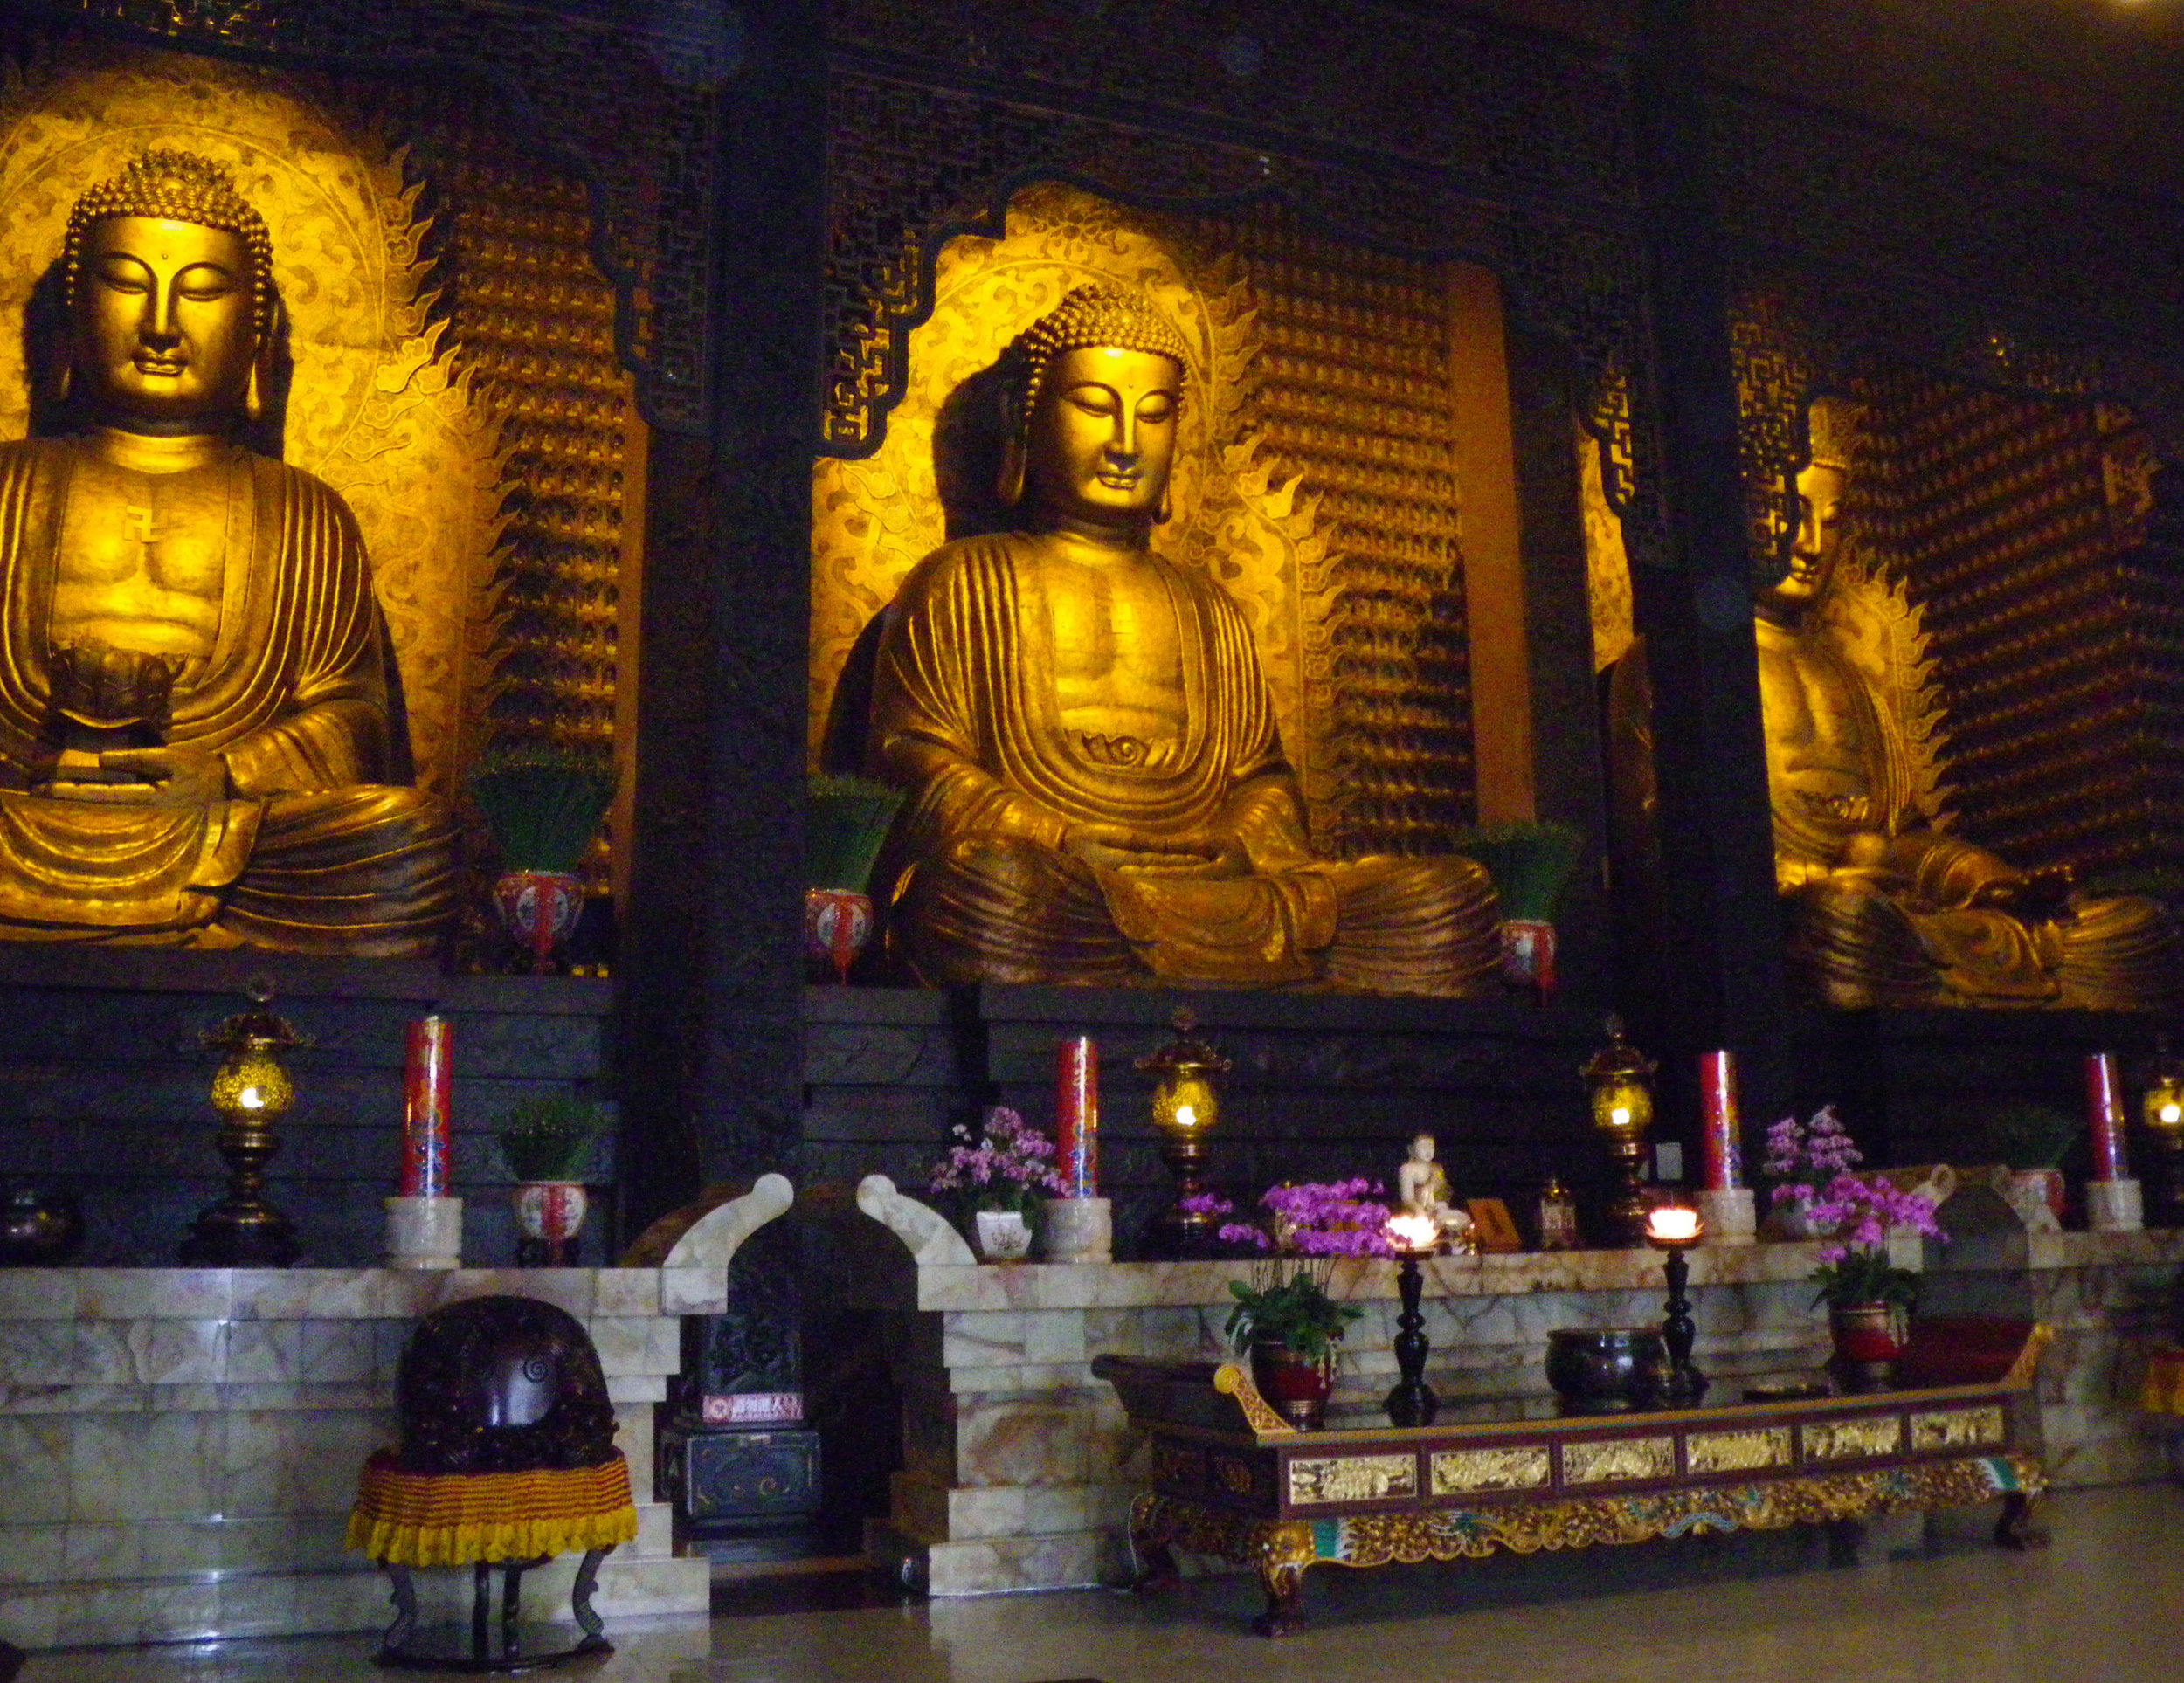 Foguangshan main shrine 4-24-10.jpg